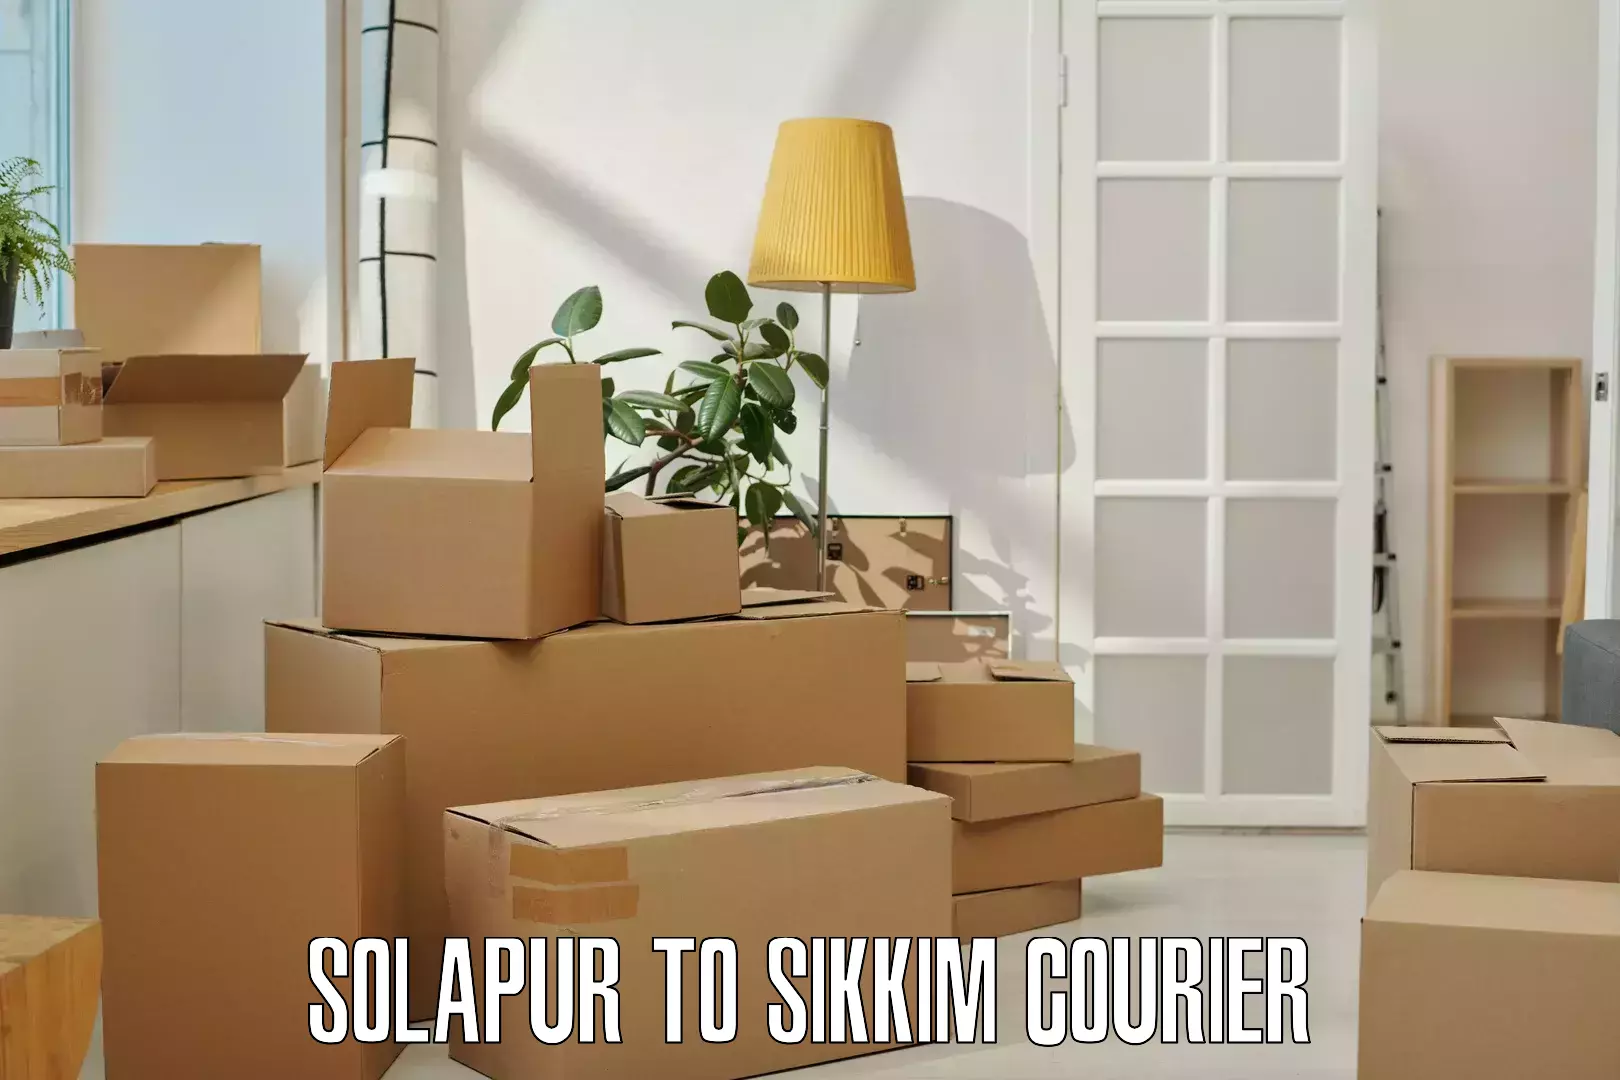 Digital courier platforms Solapur to Singtam